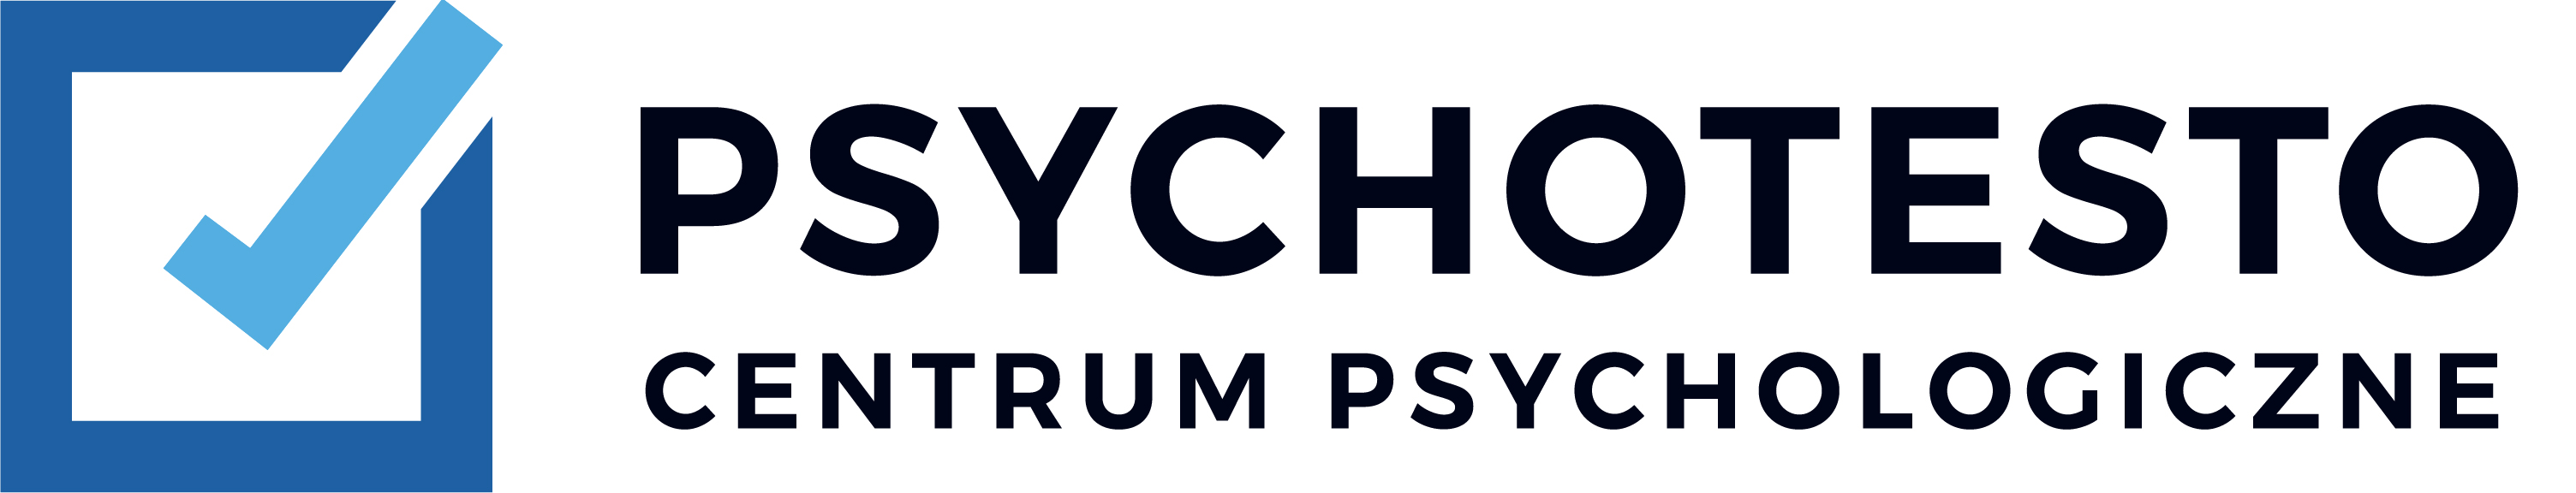 PSYCHOTESTO Centrum Psychologiczne Łódź - Usługi psychologiczne: konsultacje psychologiczne, poradnictwo psychologiczne, psychoterapia.